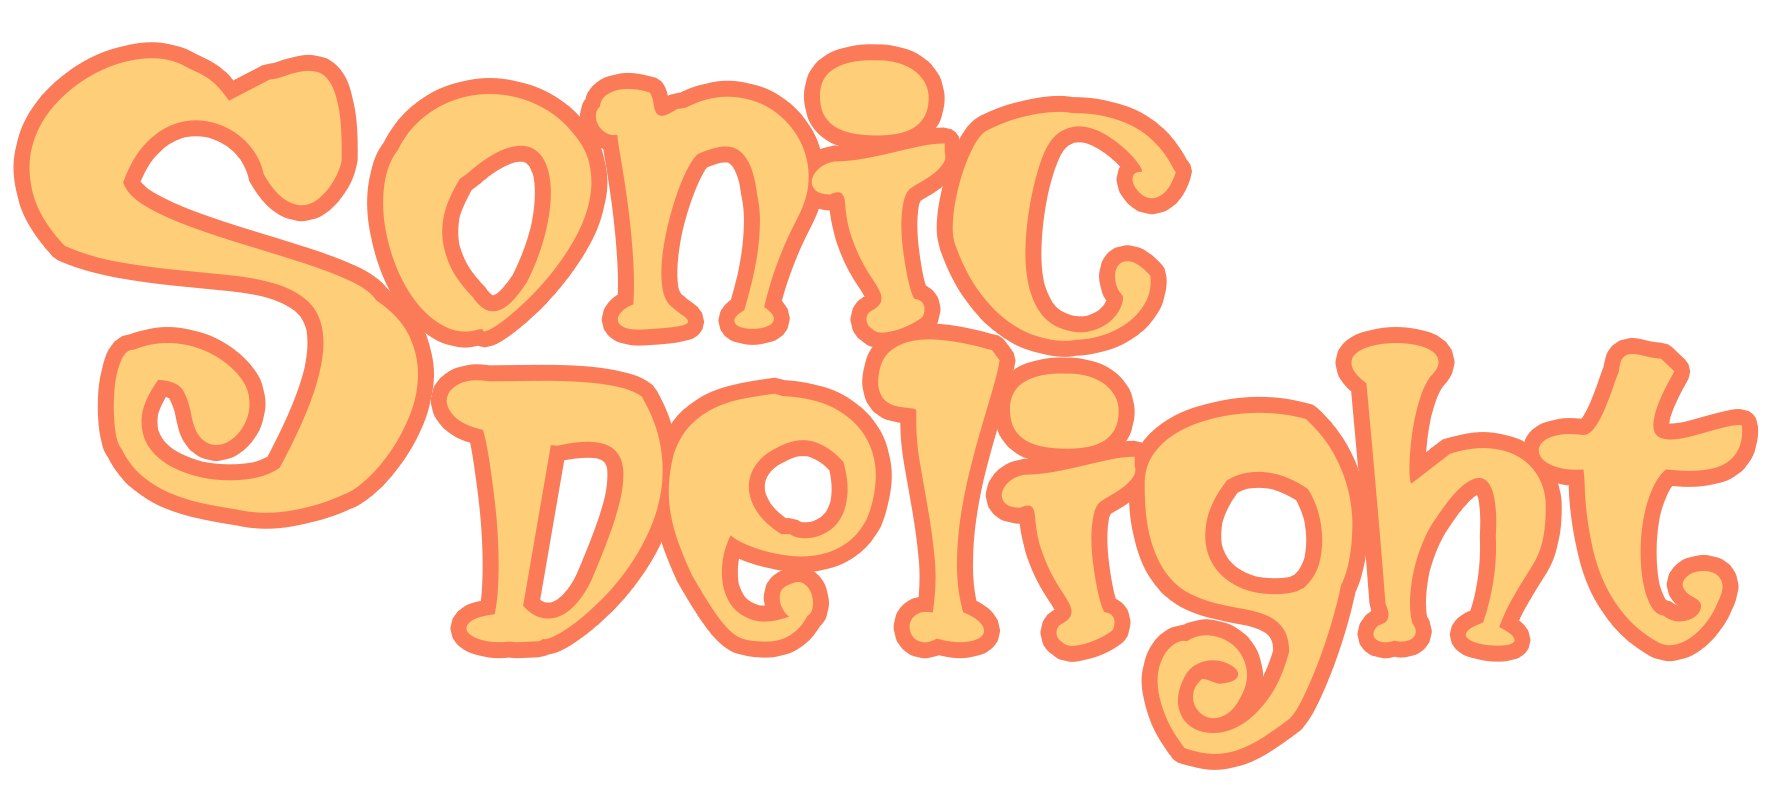 Sonic Delight